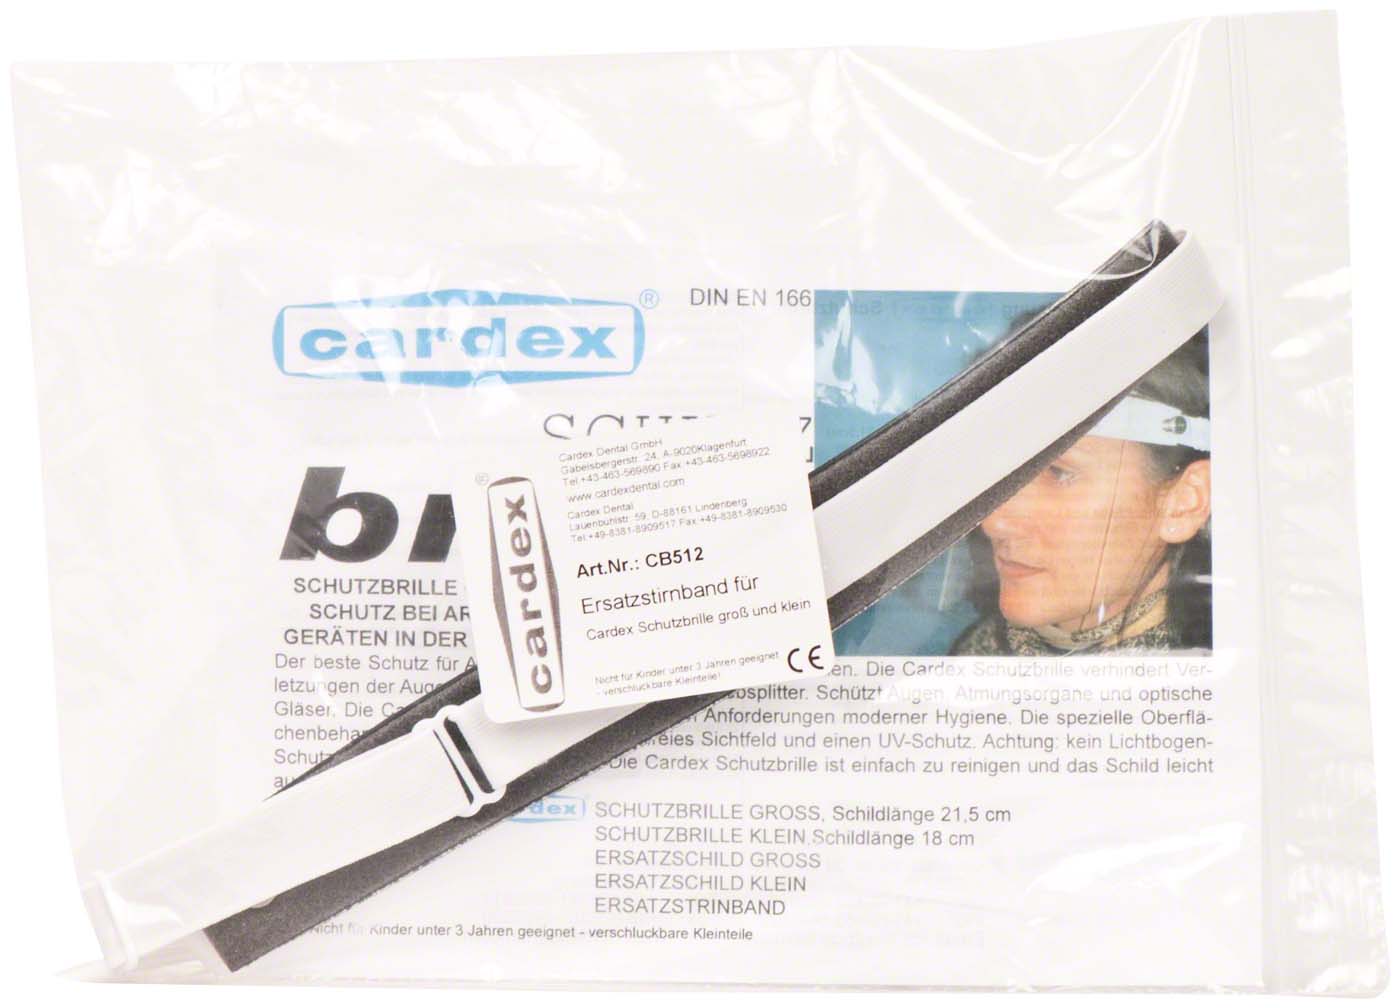 Cardex-Schutzbrille Cardex Dental